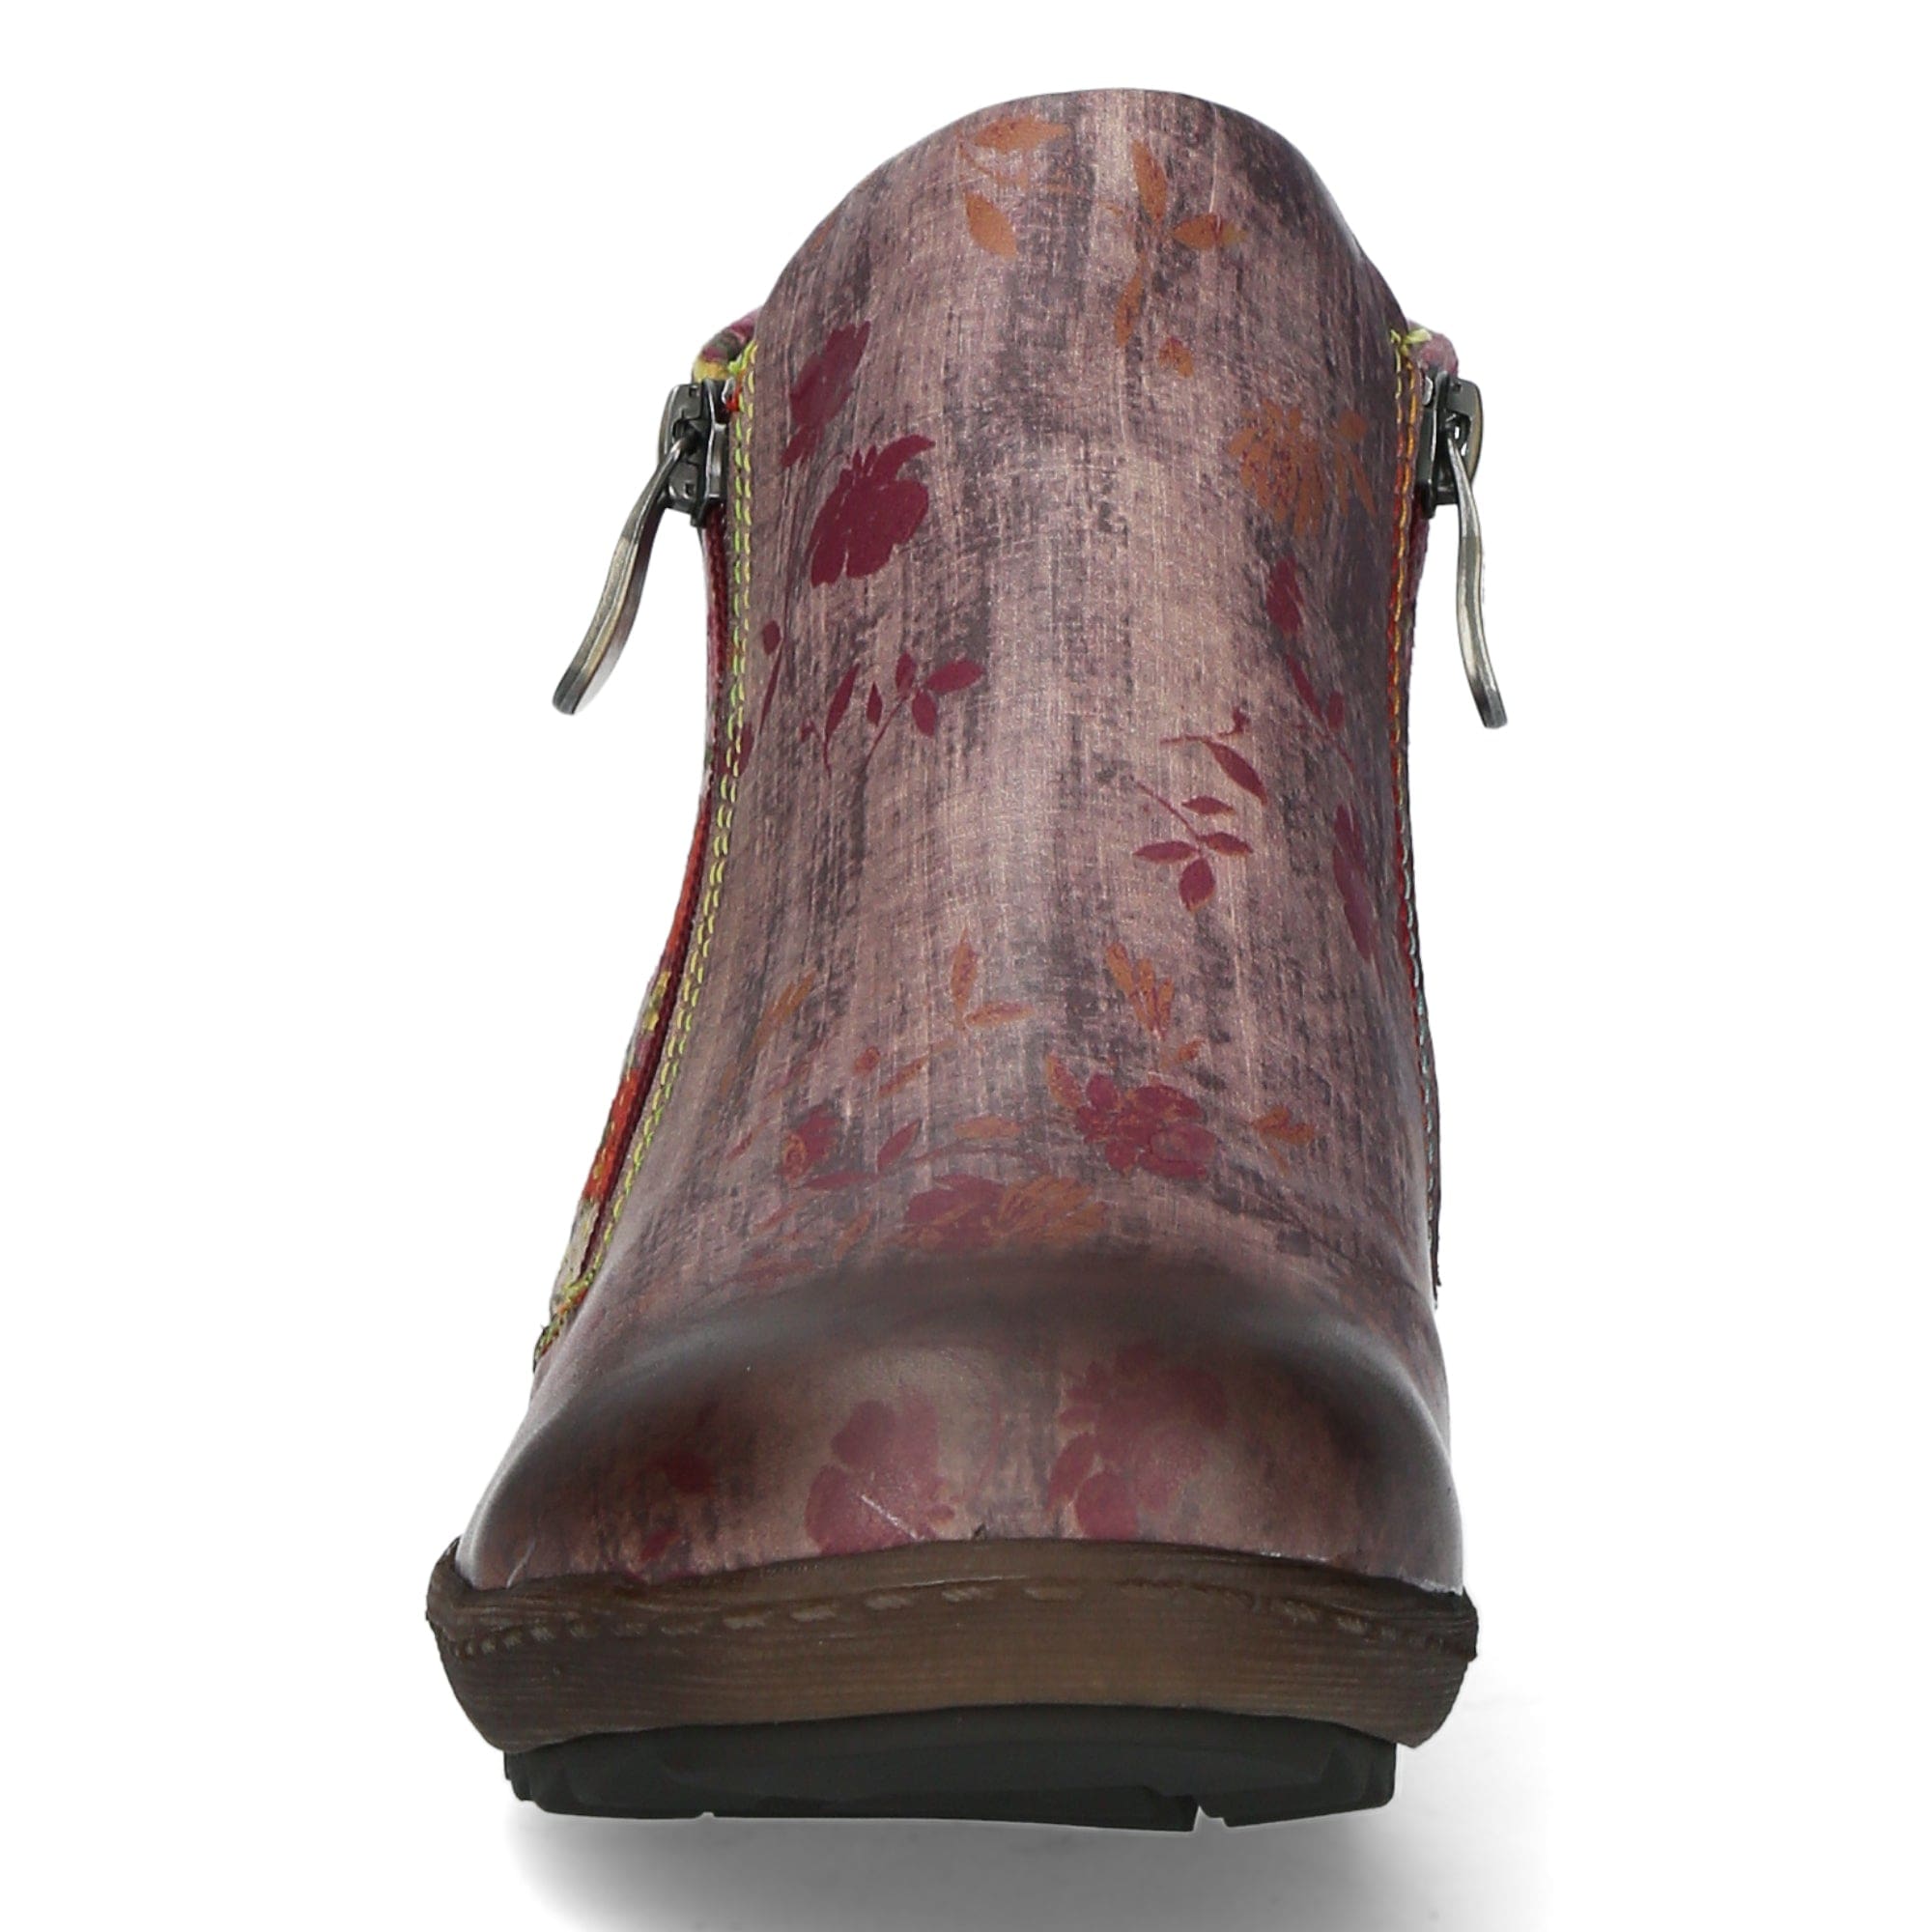 Schuh GOCTHO 0122 - Boots